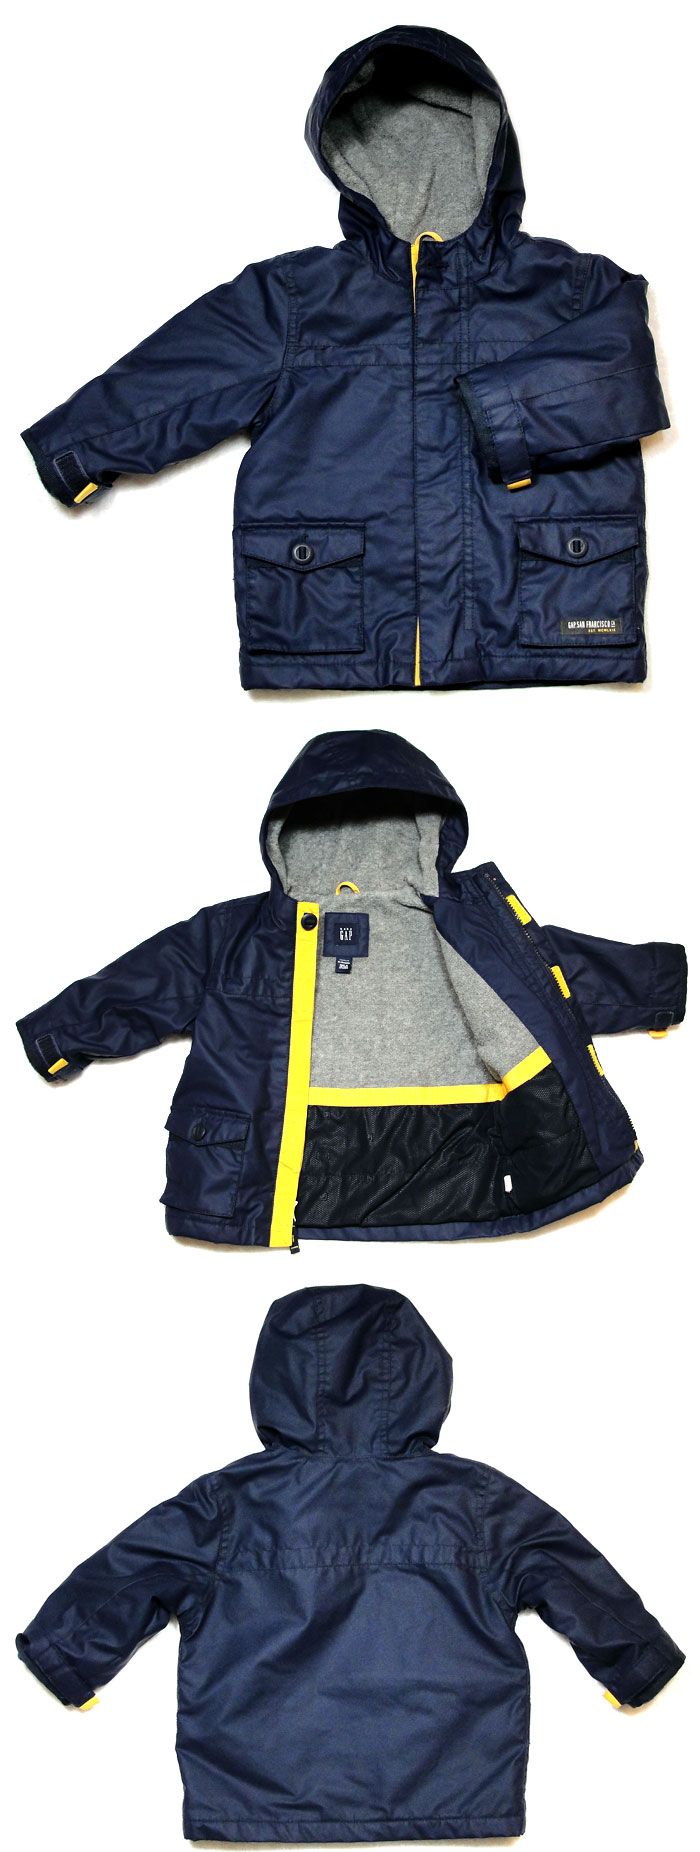 Baby Gap 18 24 Navy Blue Jacket Hoodie Rain Resistant Coat